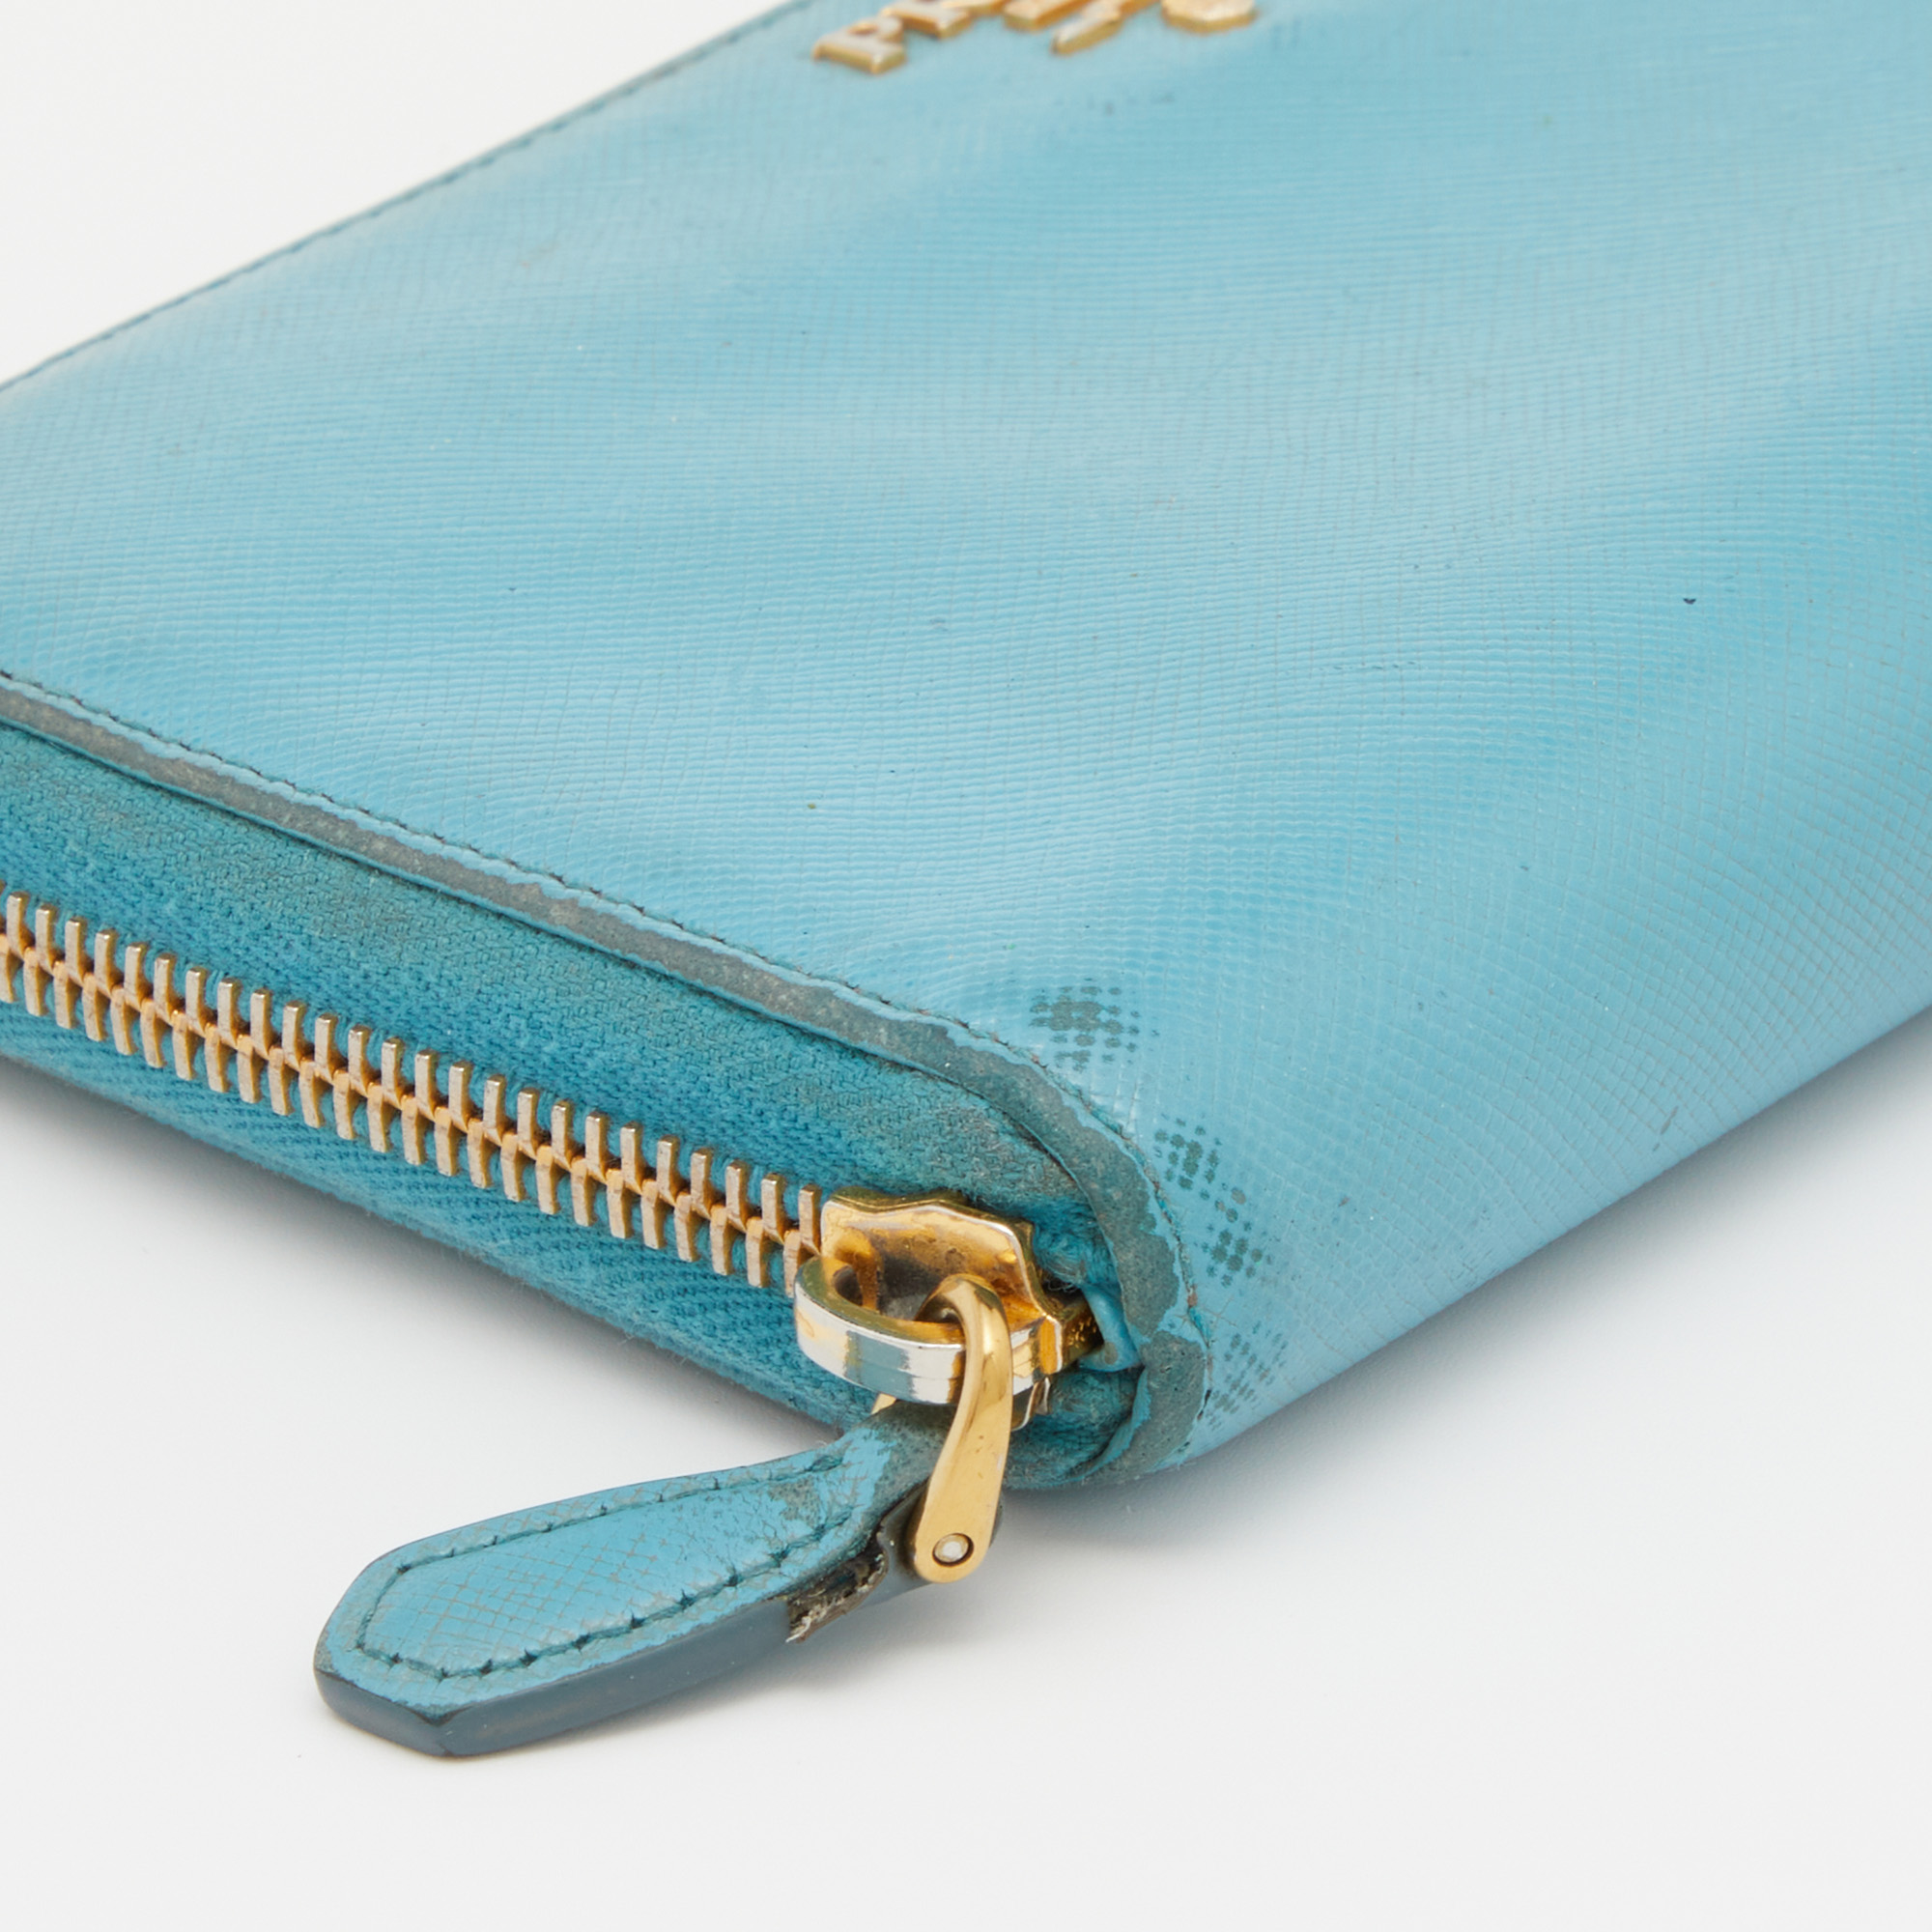 Prada Blue Saffiano Lux Leather Zip Around Wallet